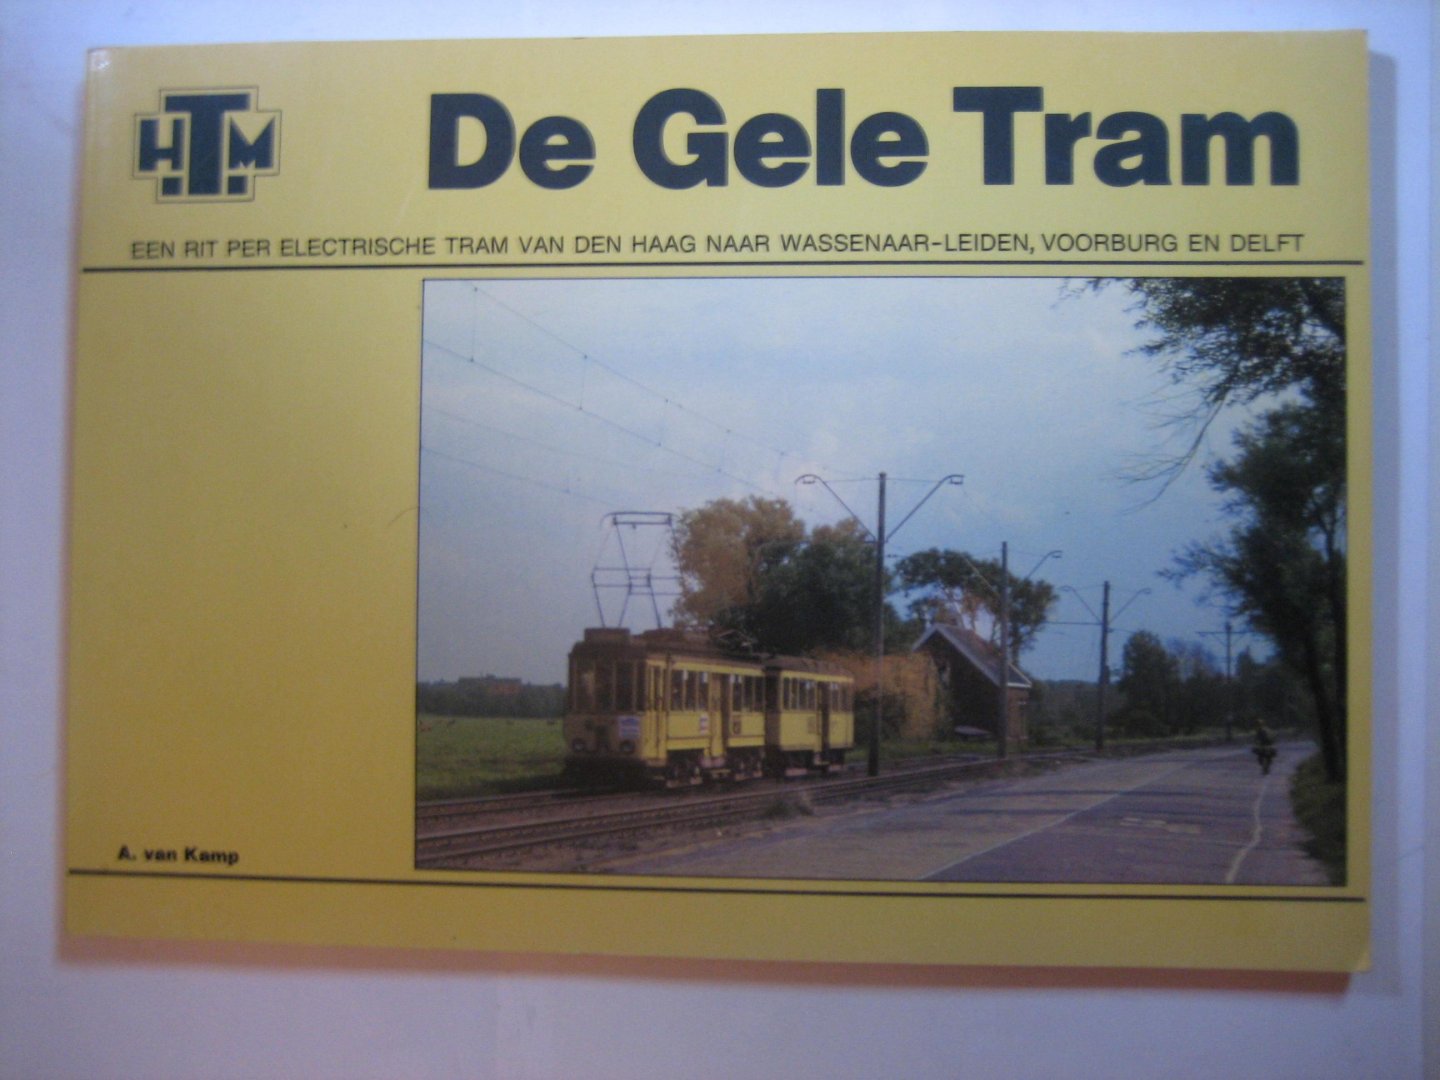 A van Kamp - HTM De Gele Tram   een rit per electrische tram van Den Haag naar Wassenaar-Leiden,Voorburg en Delft